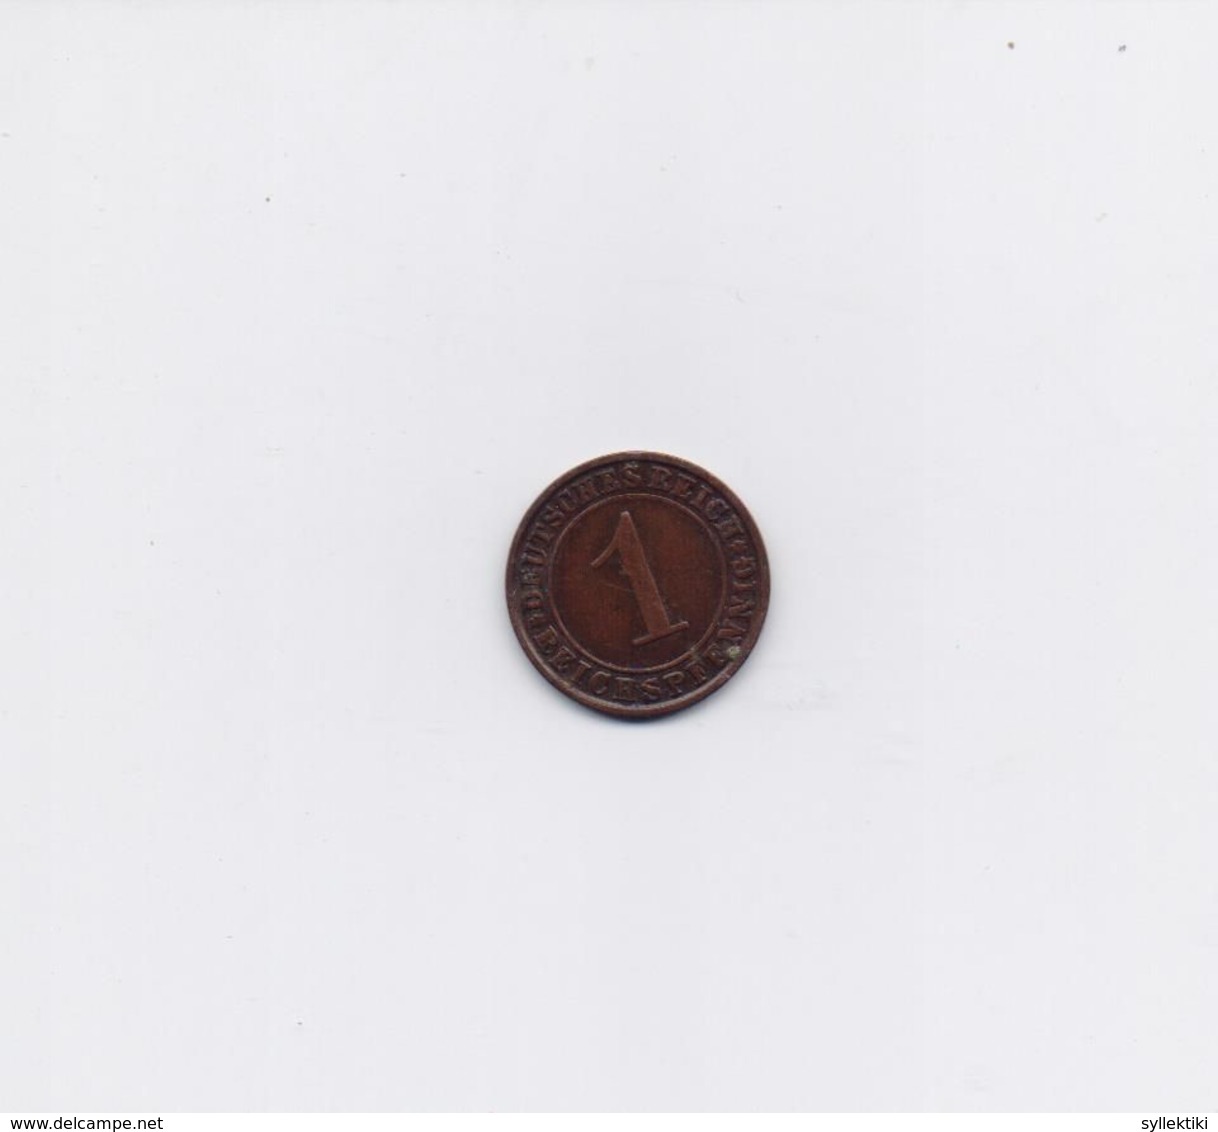 GERMANY DEUTSCHES REICH 1925 J 1 PFENNIG COPPER COIN - 1 Rentenpfennig & 1 Reichspfennig